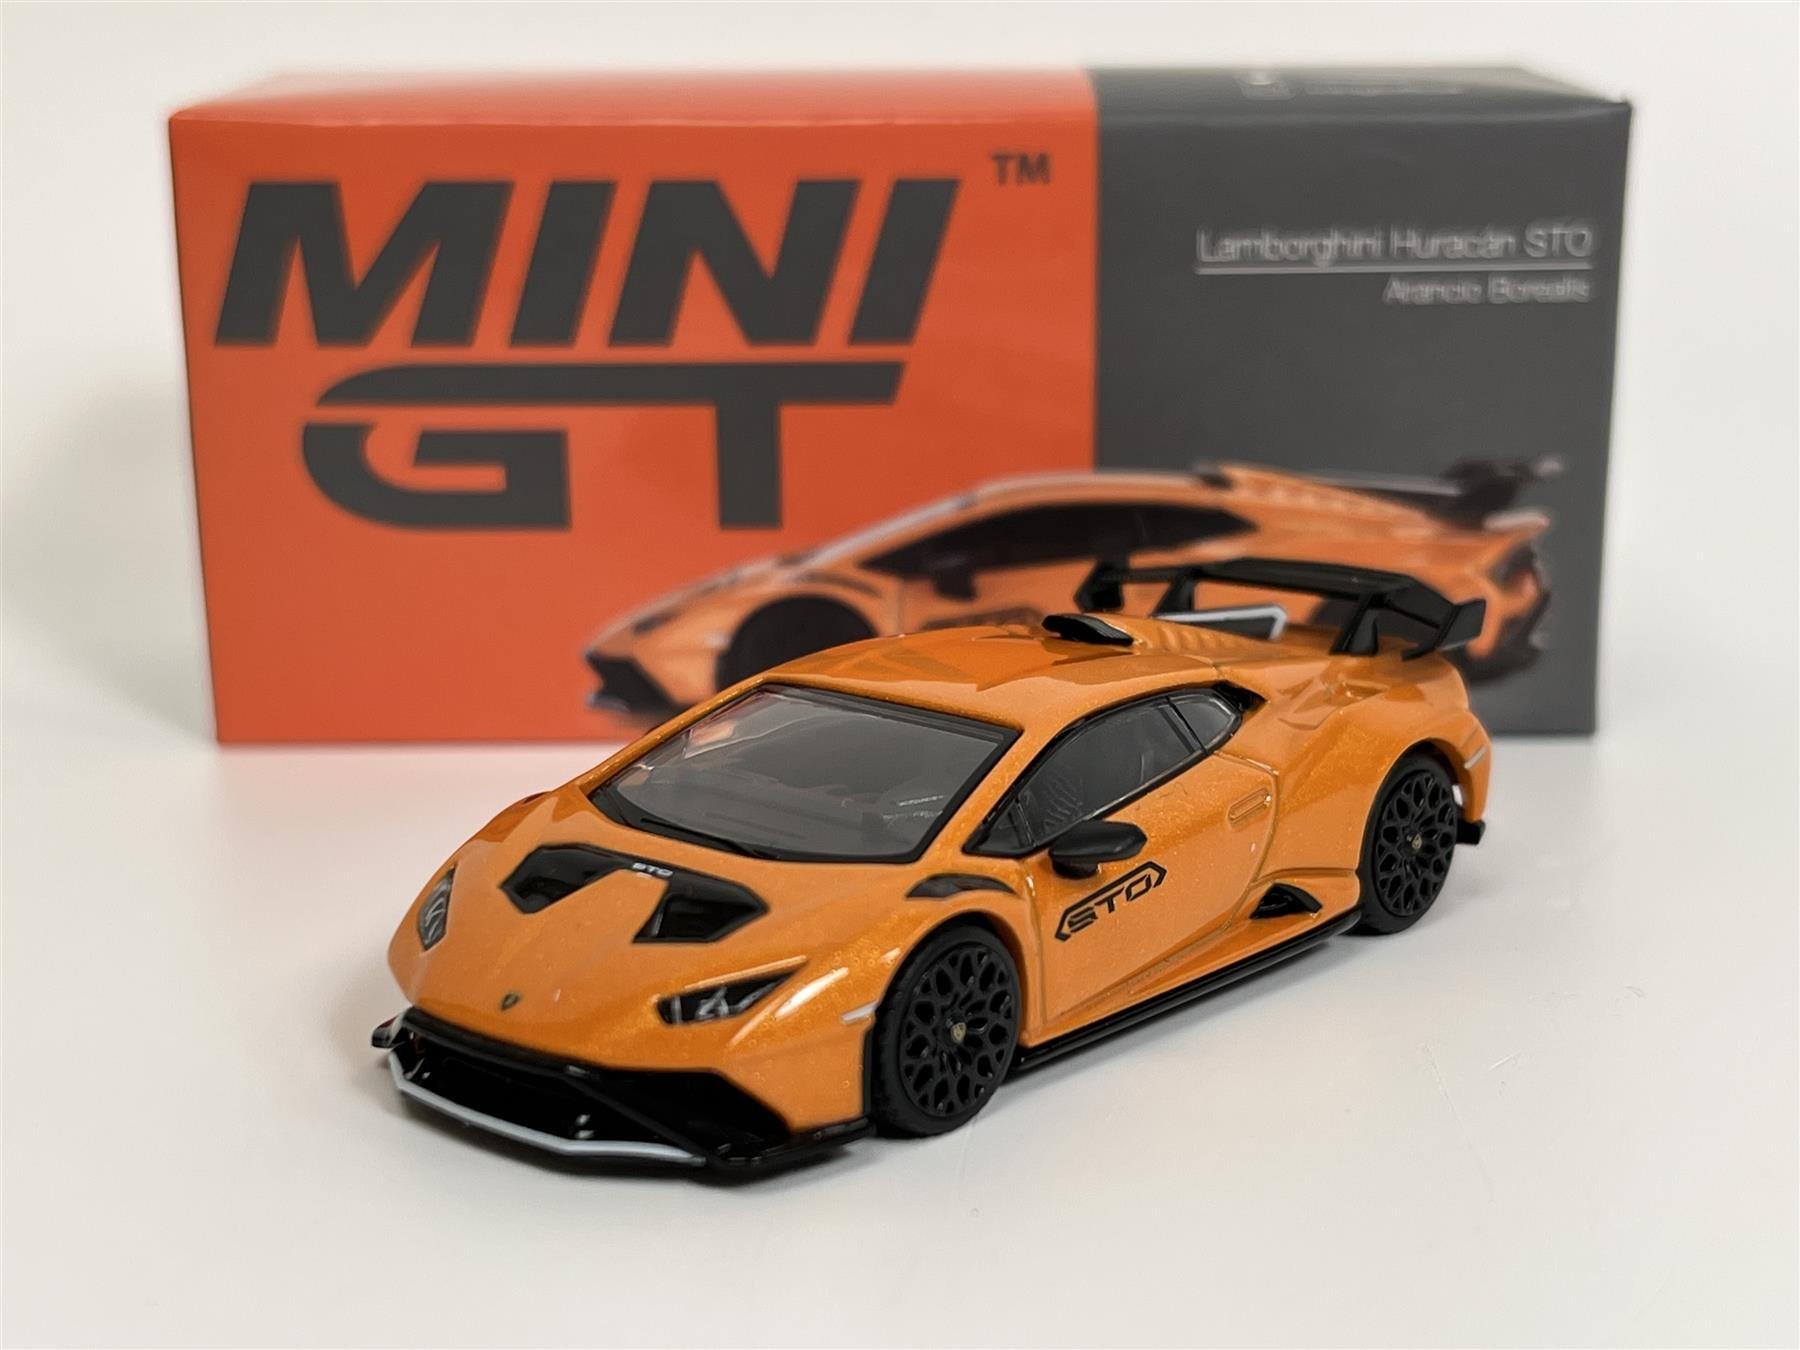 MINI GT 1:64 Lamborghini Huracán STO Arancio Borealis (MGT00511-L) Die